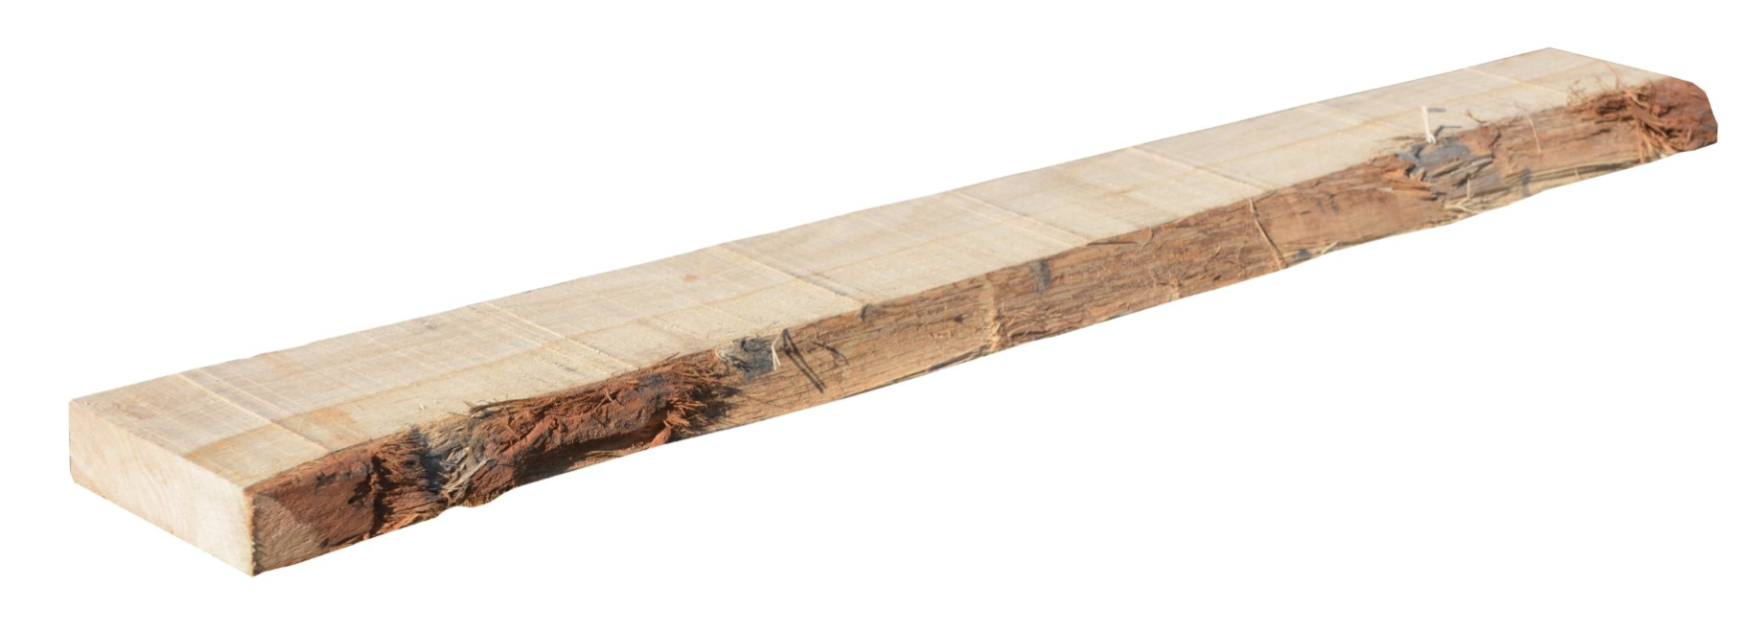 Planche en chêne massif avec écorce sur un bord, de +/ 80x27 mm, L.2m